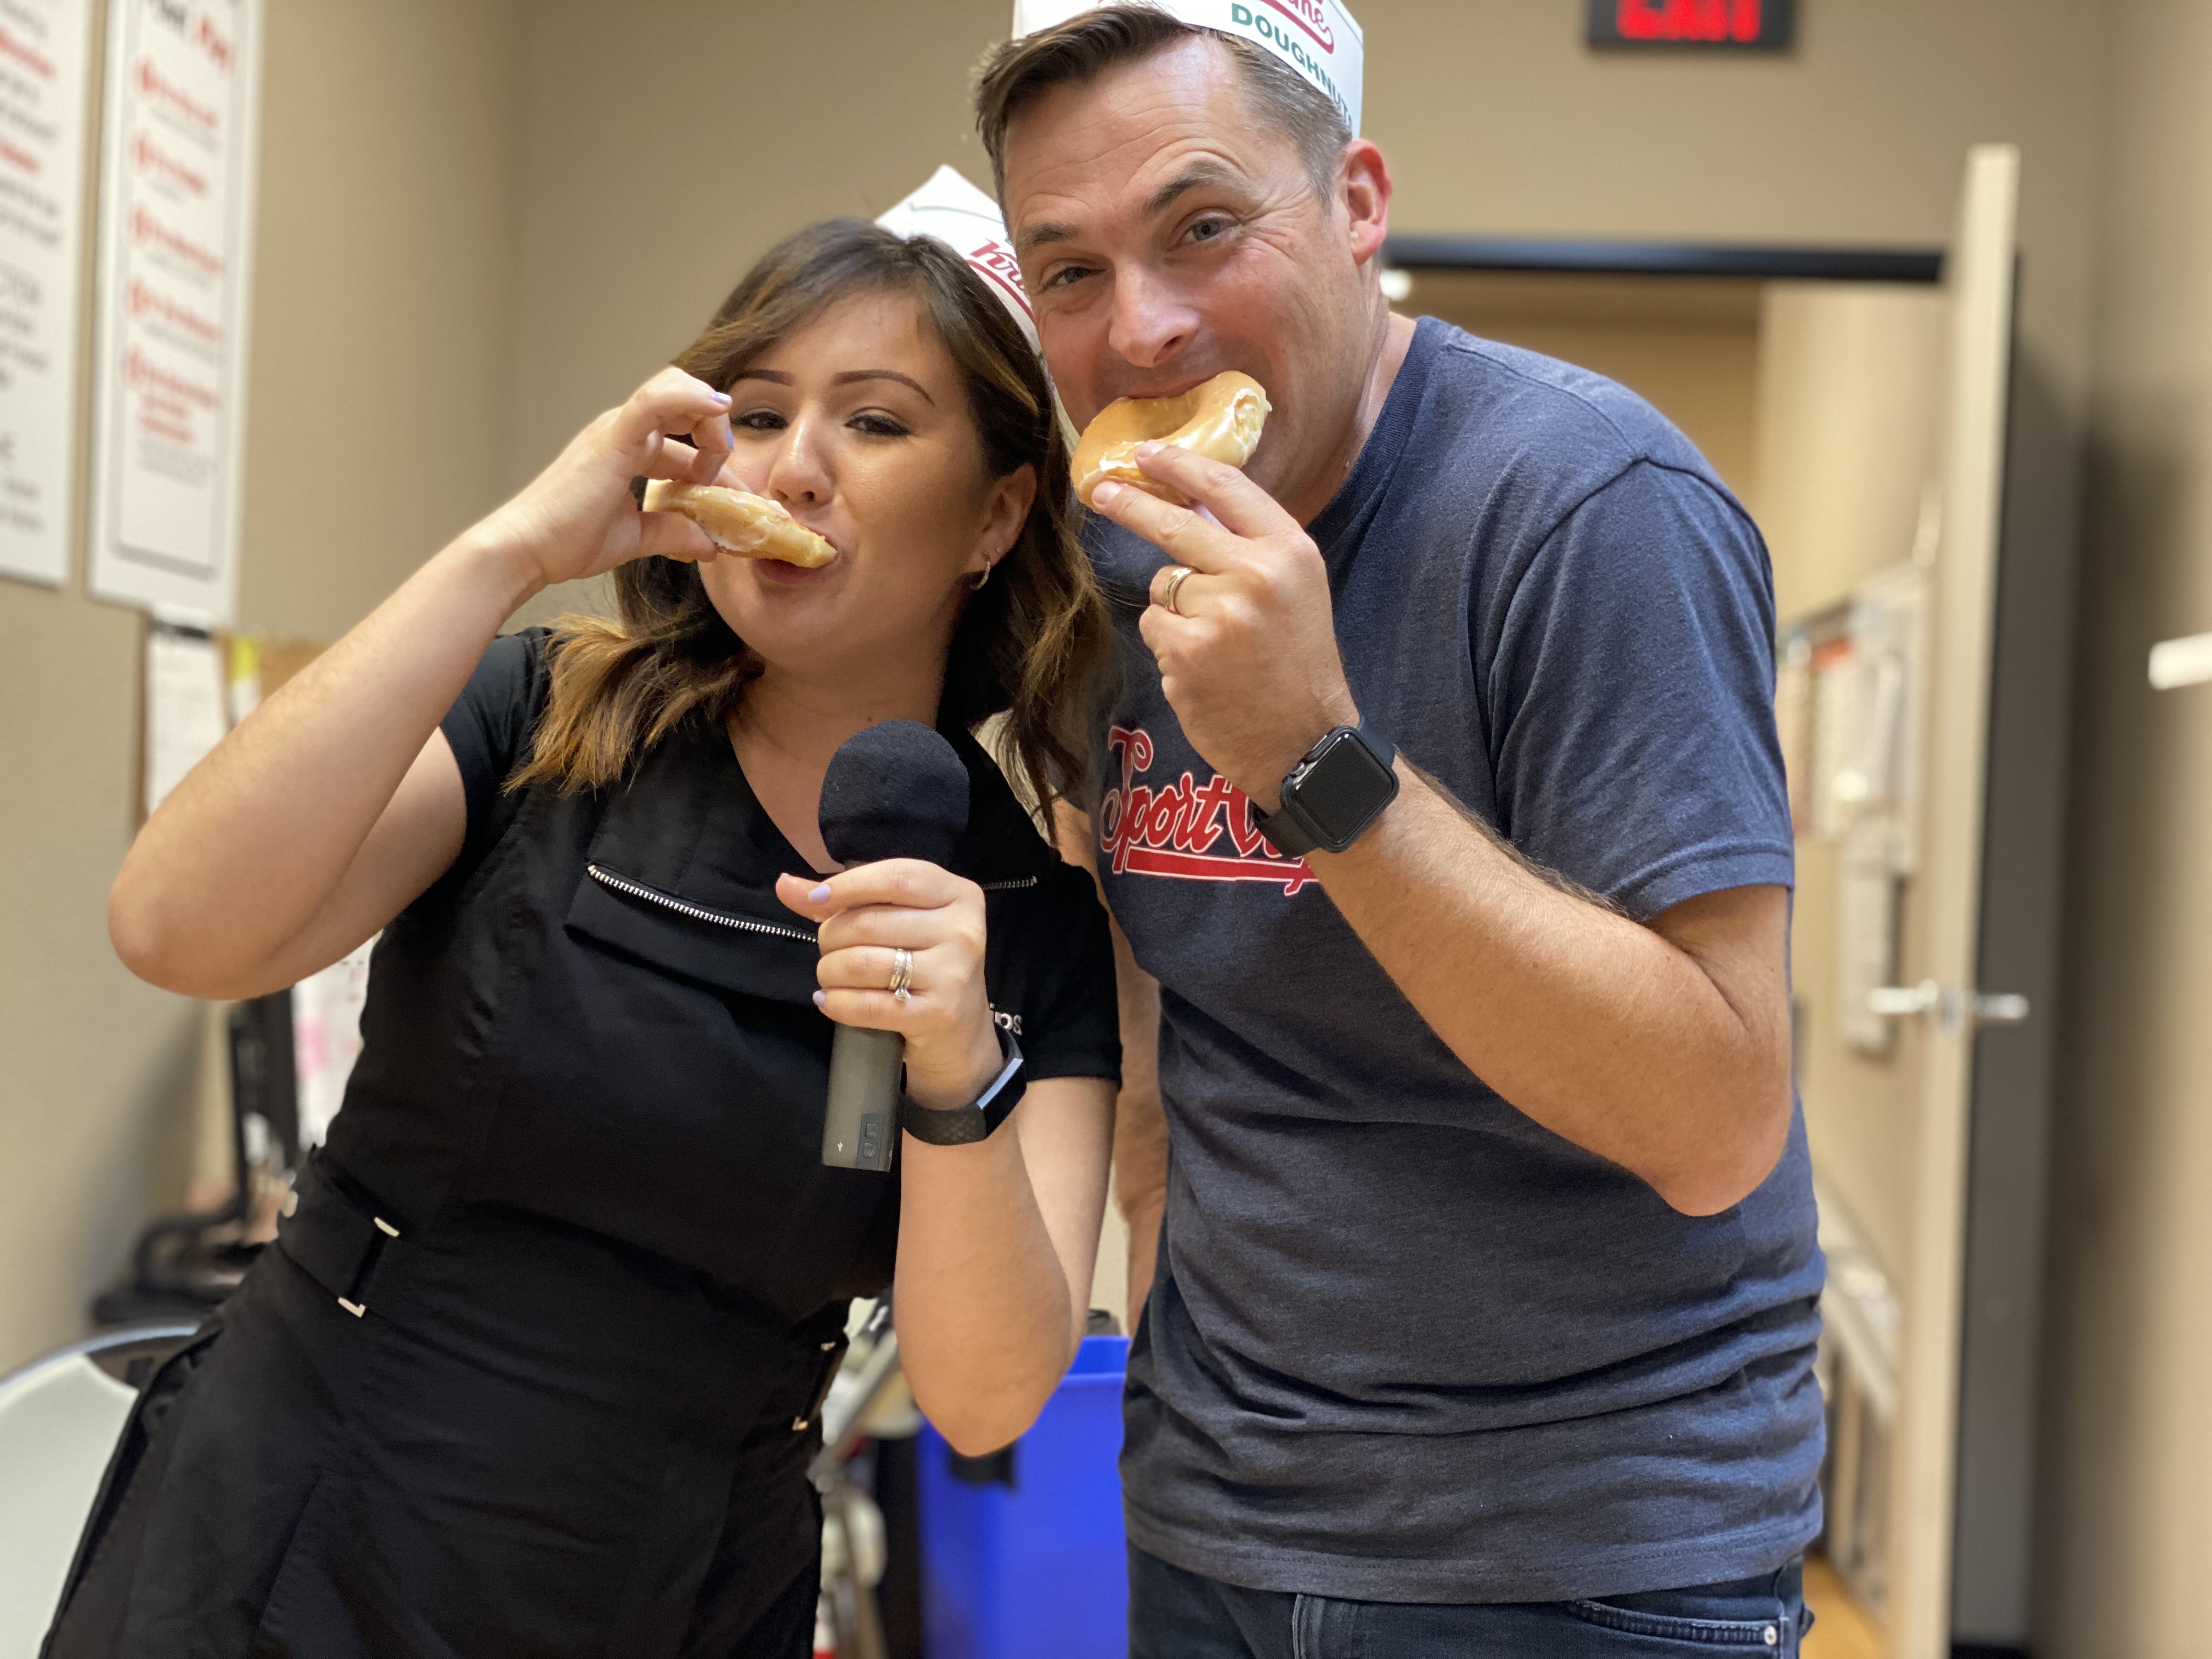 Chad Jordan and Laura Torres eating Krispy Kreme Donuts